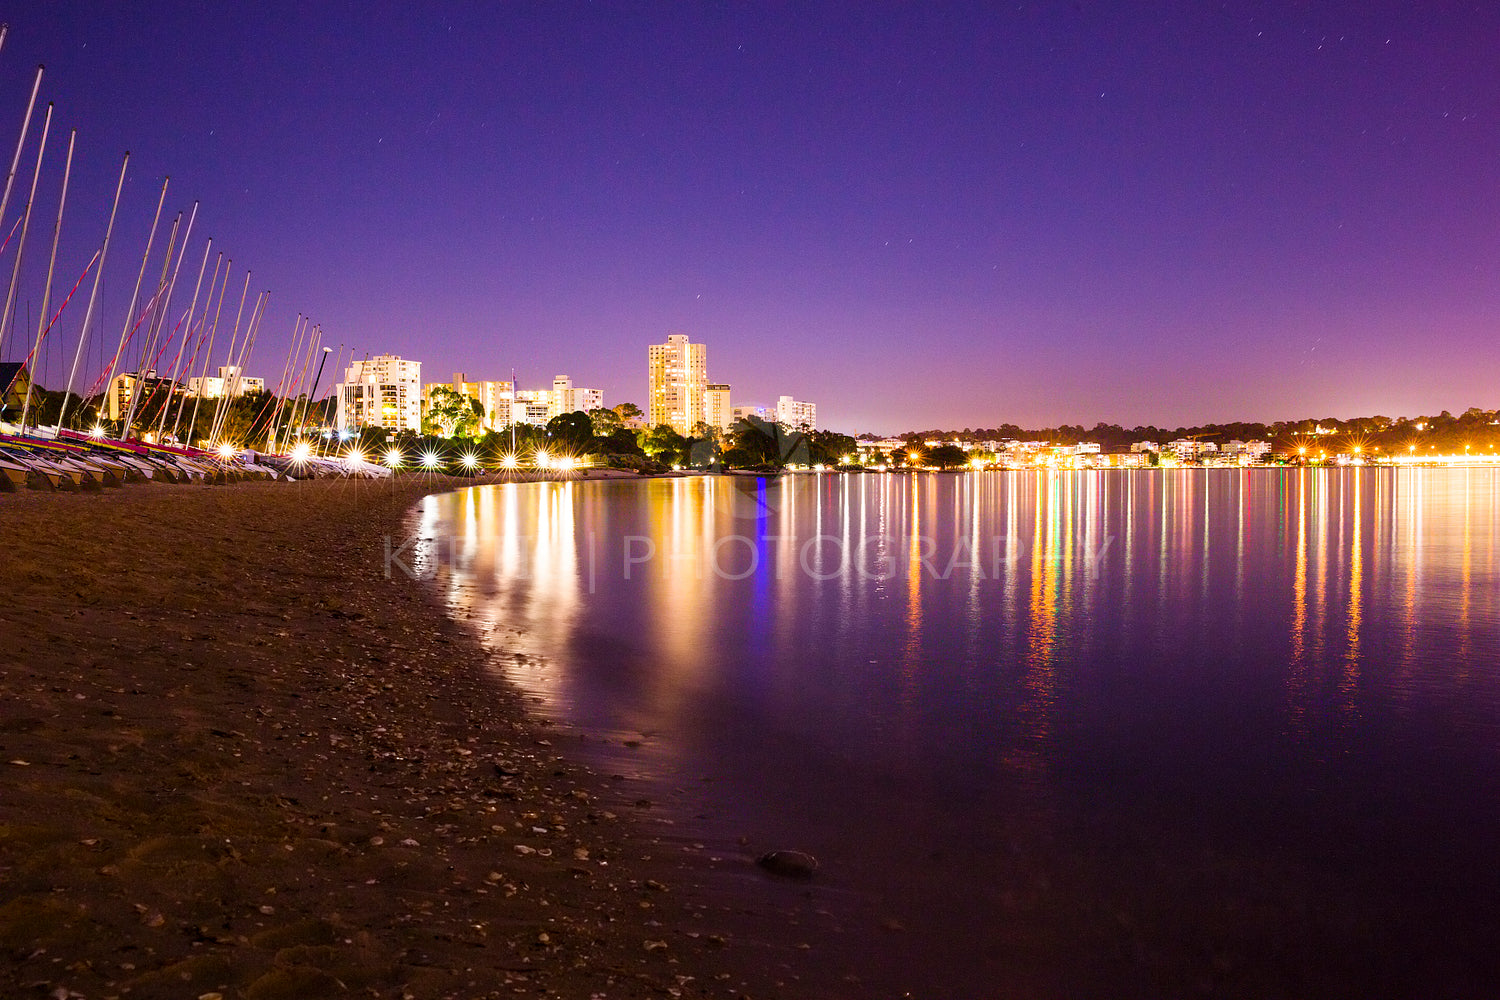 Perth city beach and boats at night